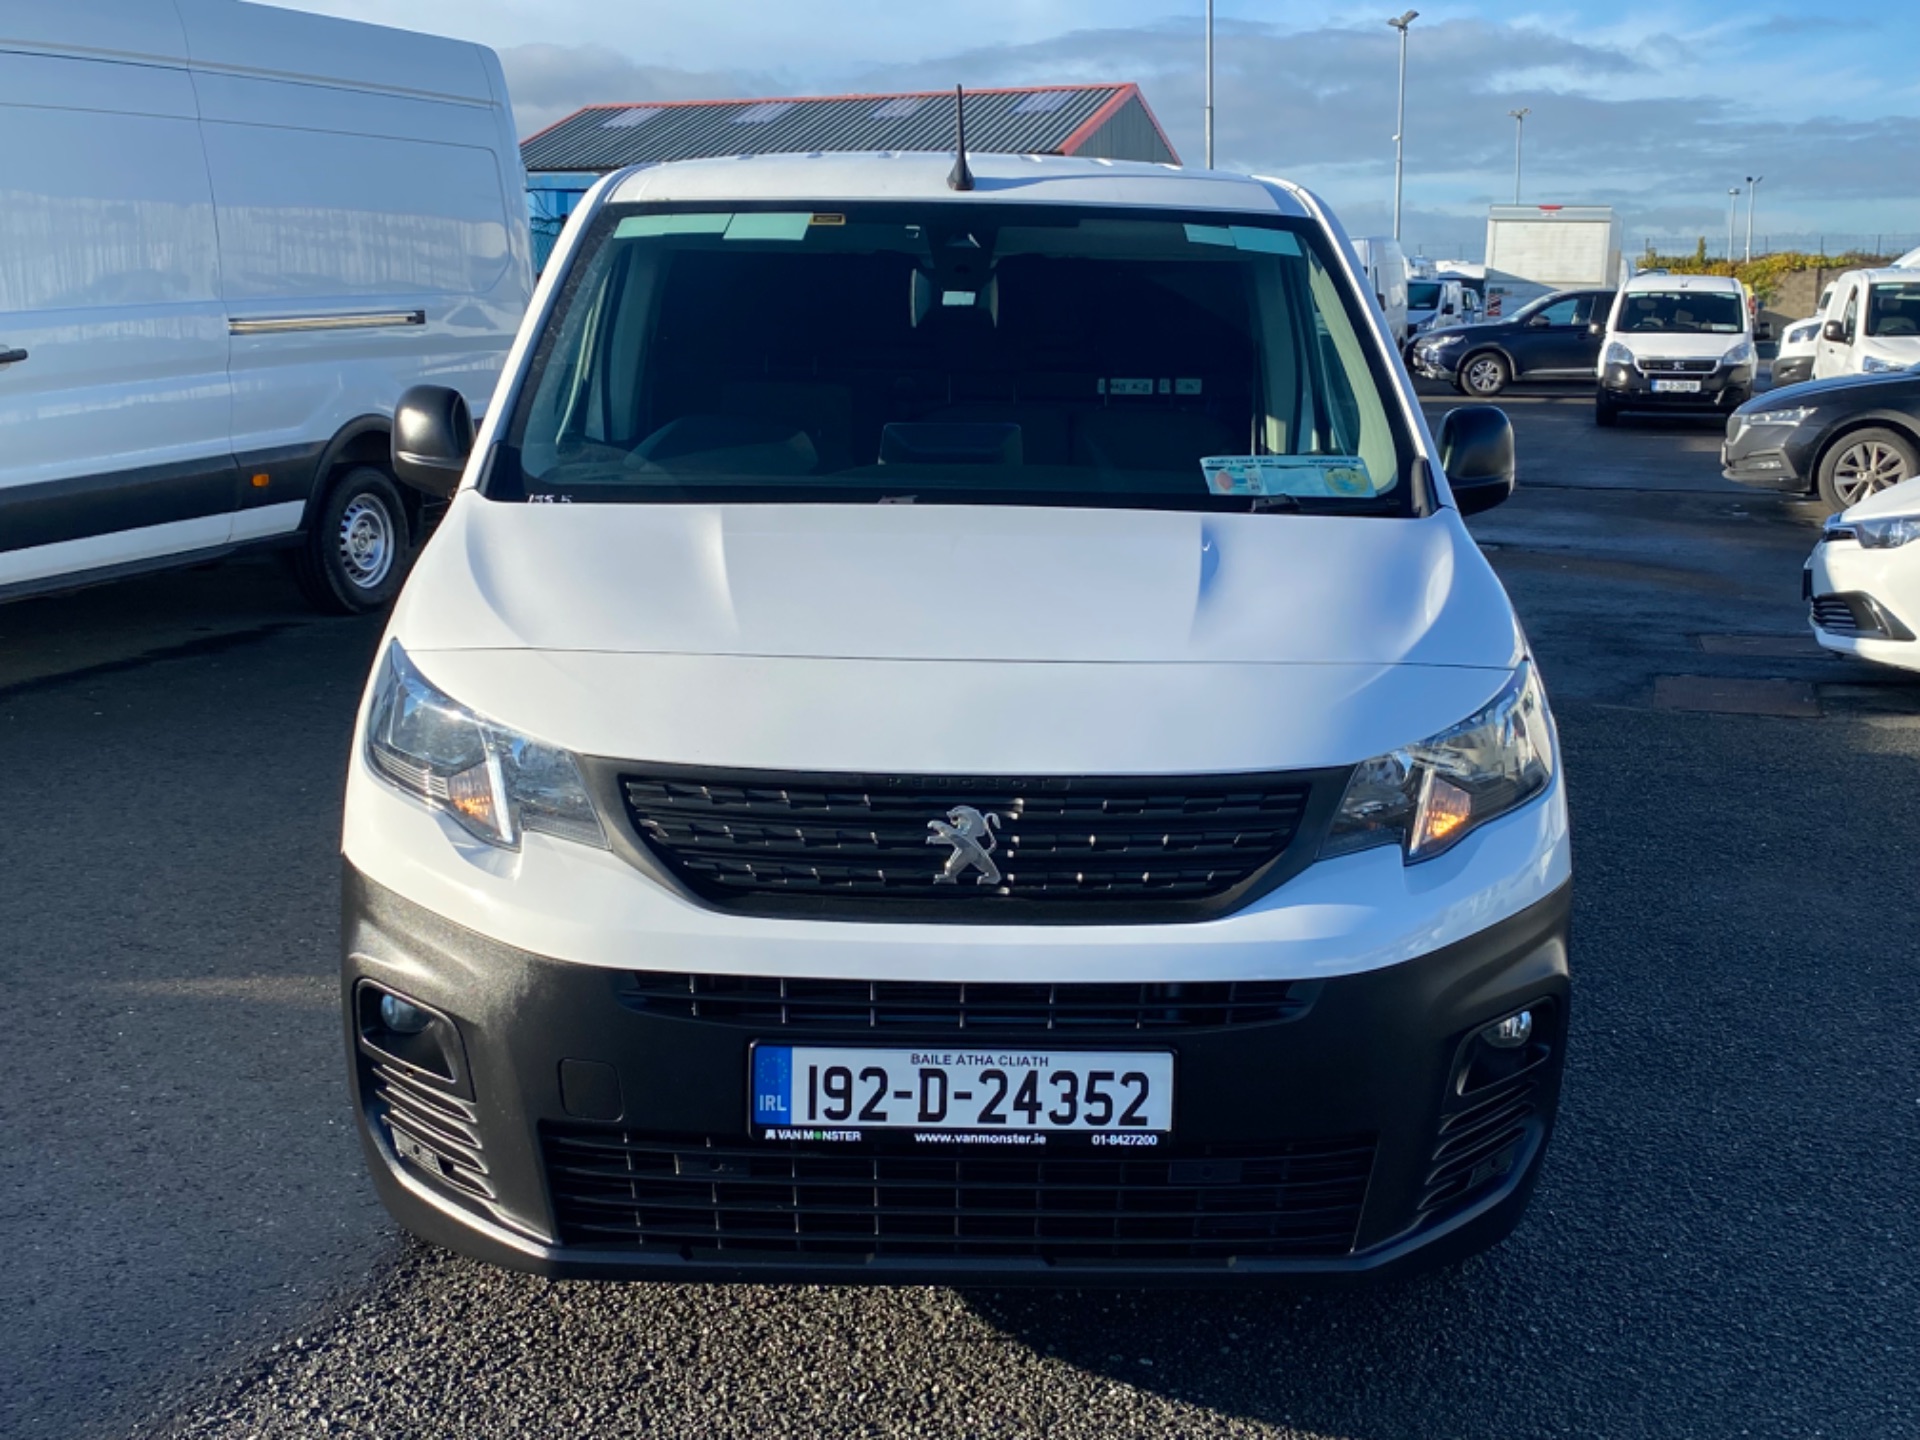 2019 Peugeot Partner Prof Plus 1.6hdi 100 1000KG 2D (192D24352) Thumbnail 2